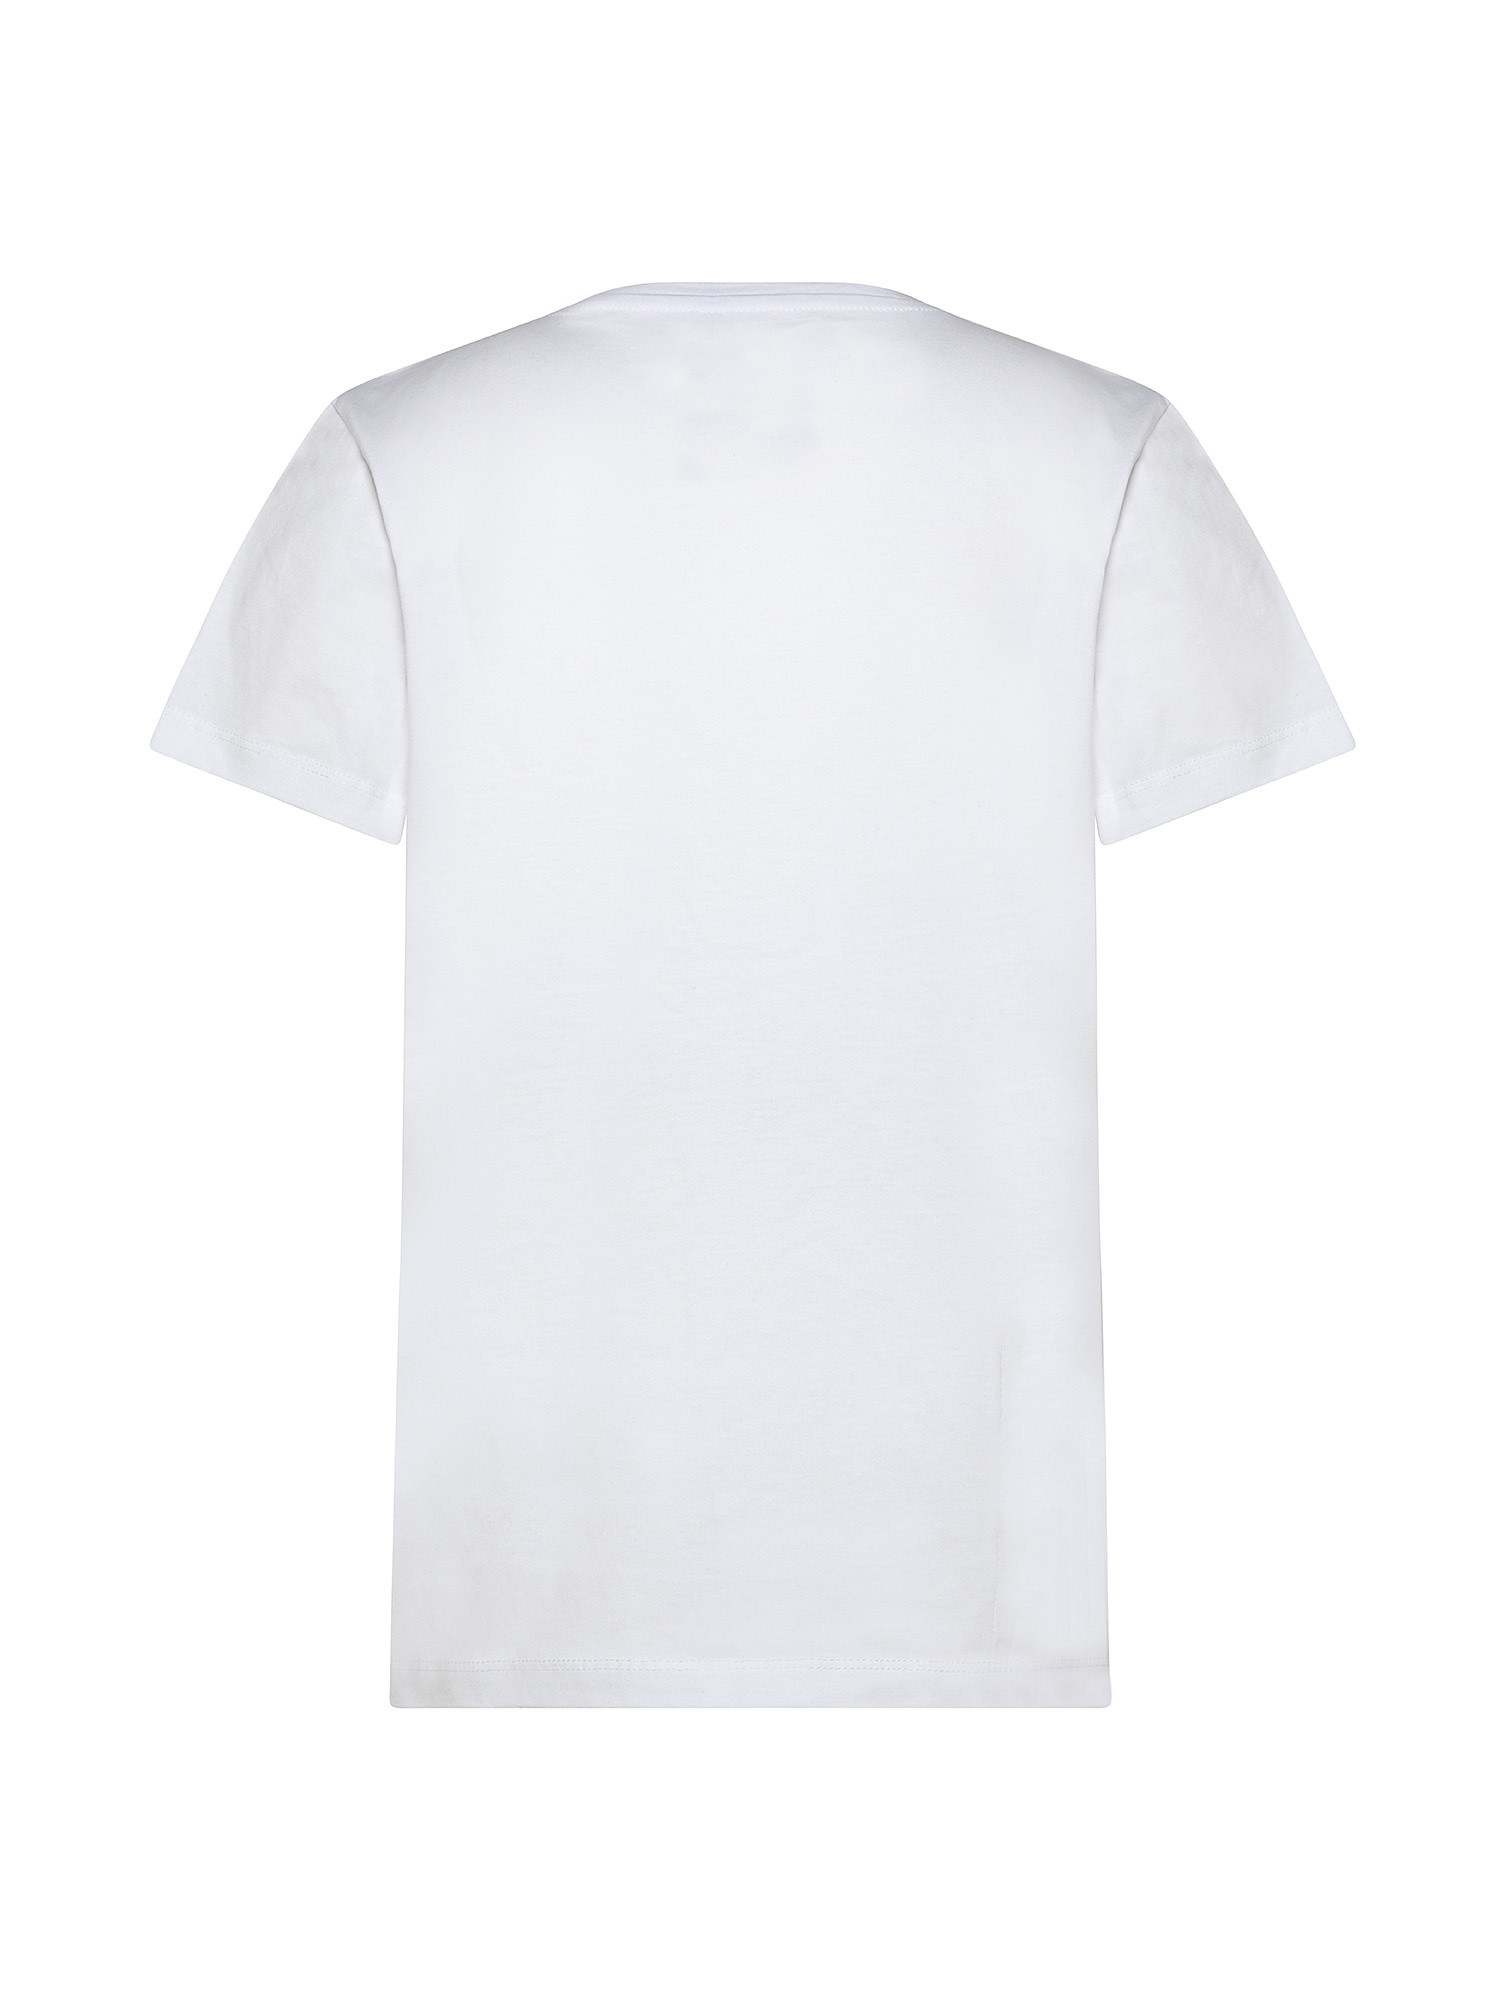 T-shirt ragazzo regular fit, Bianco, large image number 1